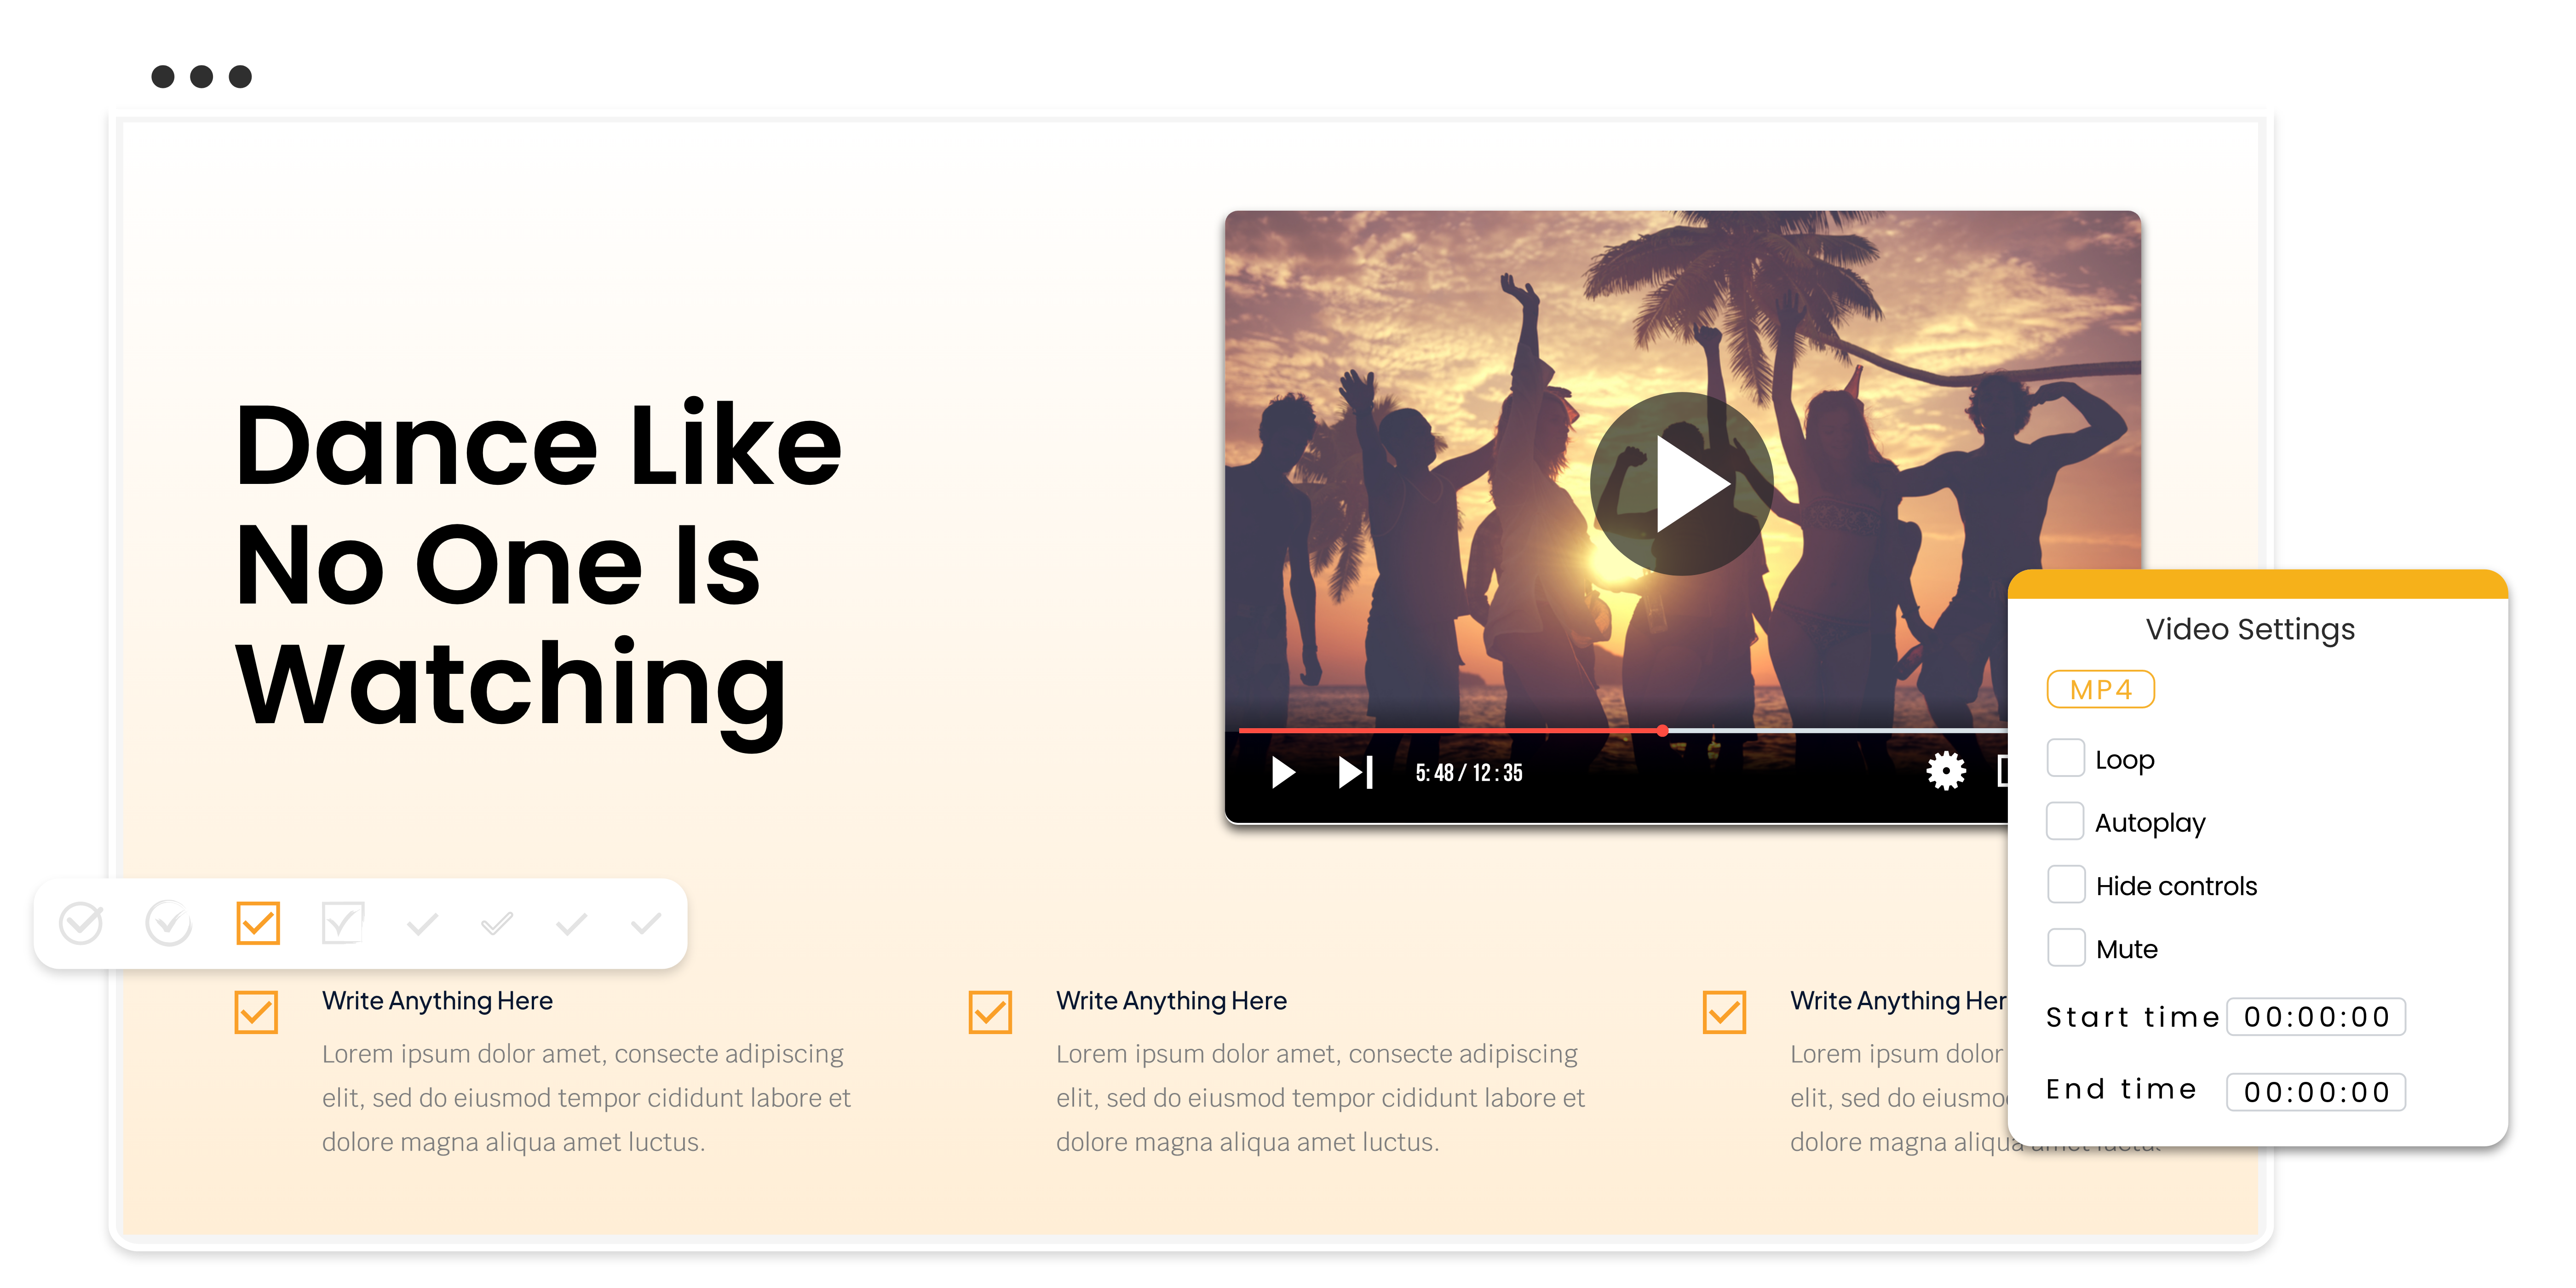 Слайд, демонстрирующий настройки и элементы управления видео, а также людей, танцующих на закате на пляже в кадре браузера.